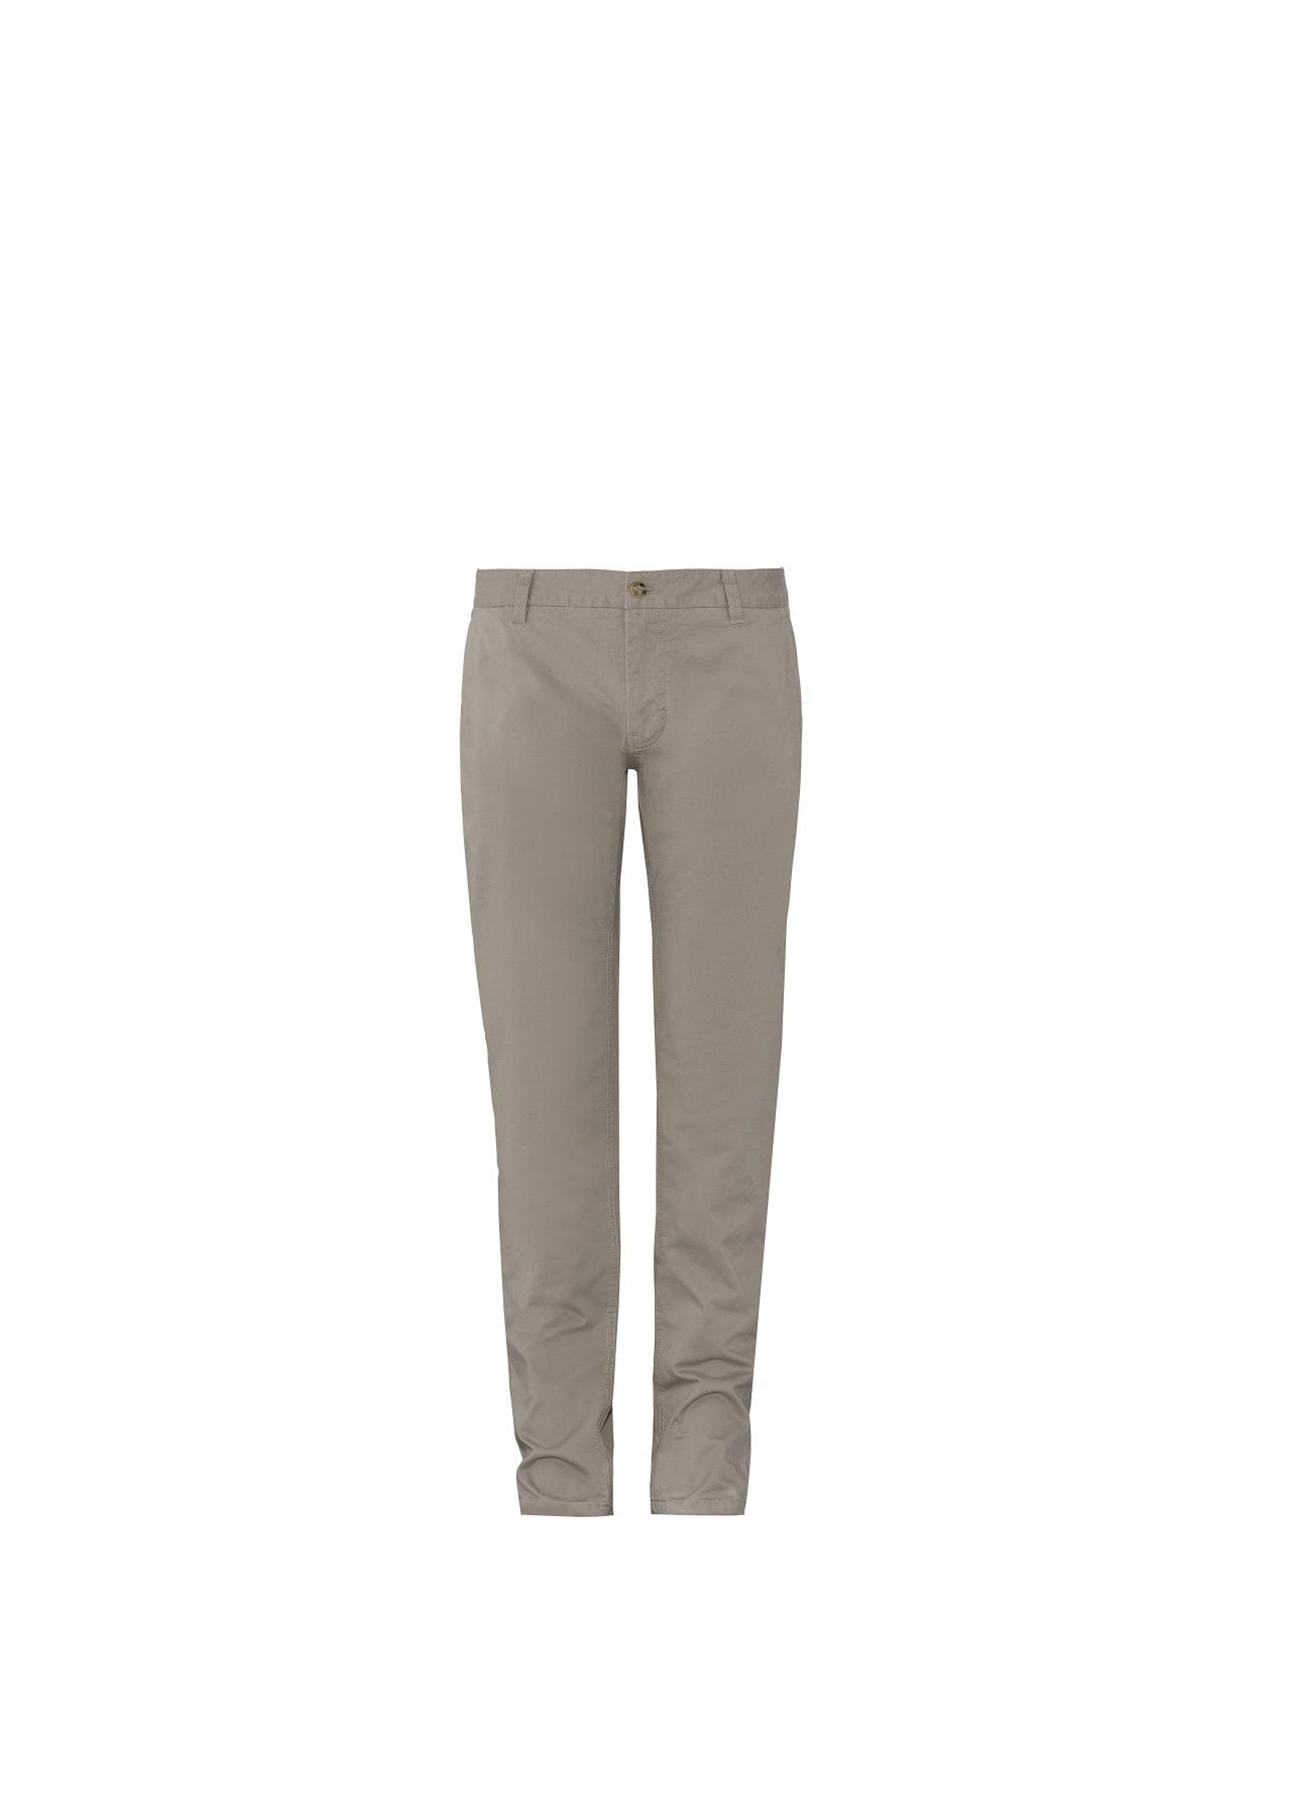 Spodnie męskie SPOMT-0045-81(W20)